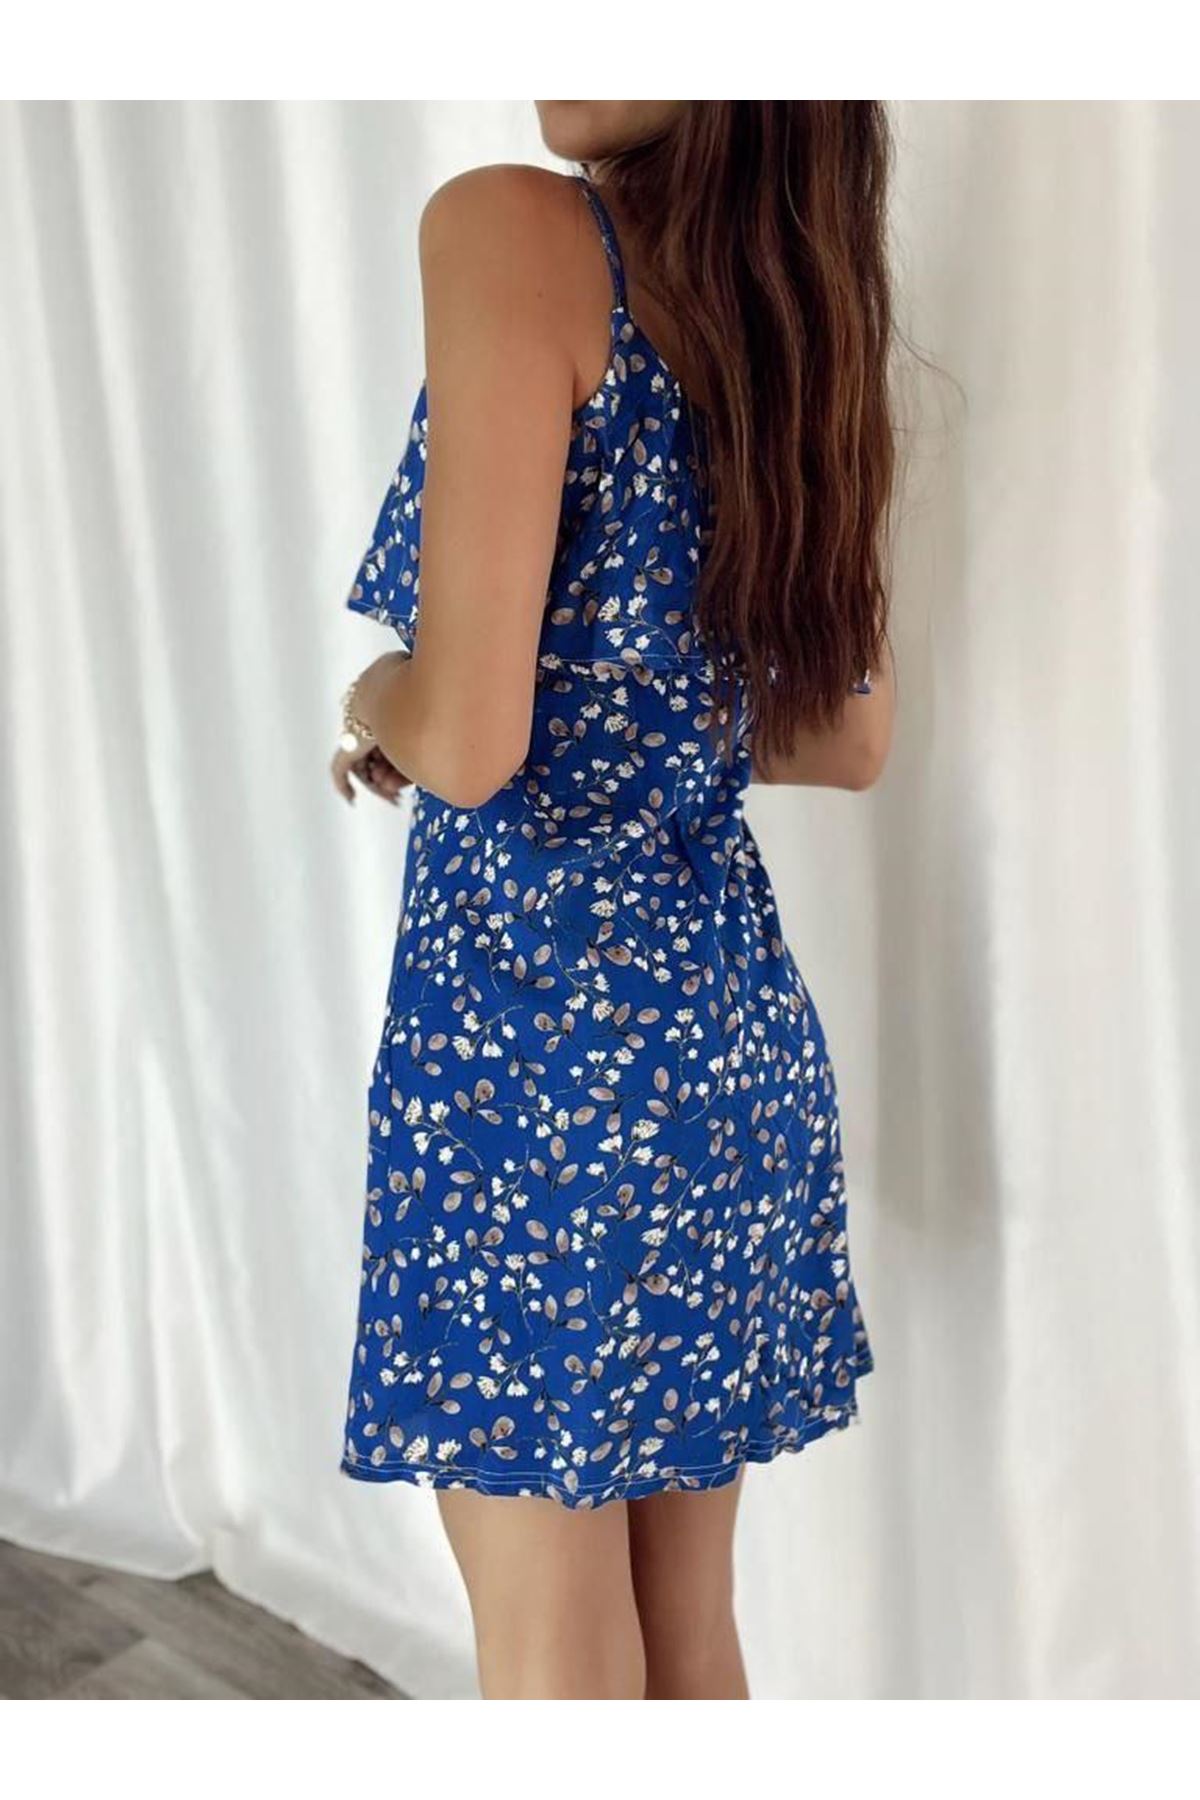 Kadın Mavi Askılı Kısa Pelerin Model Yazlık Dokuma Elbise 6C-2111